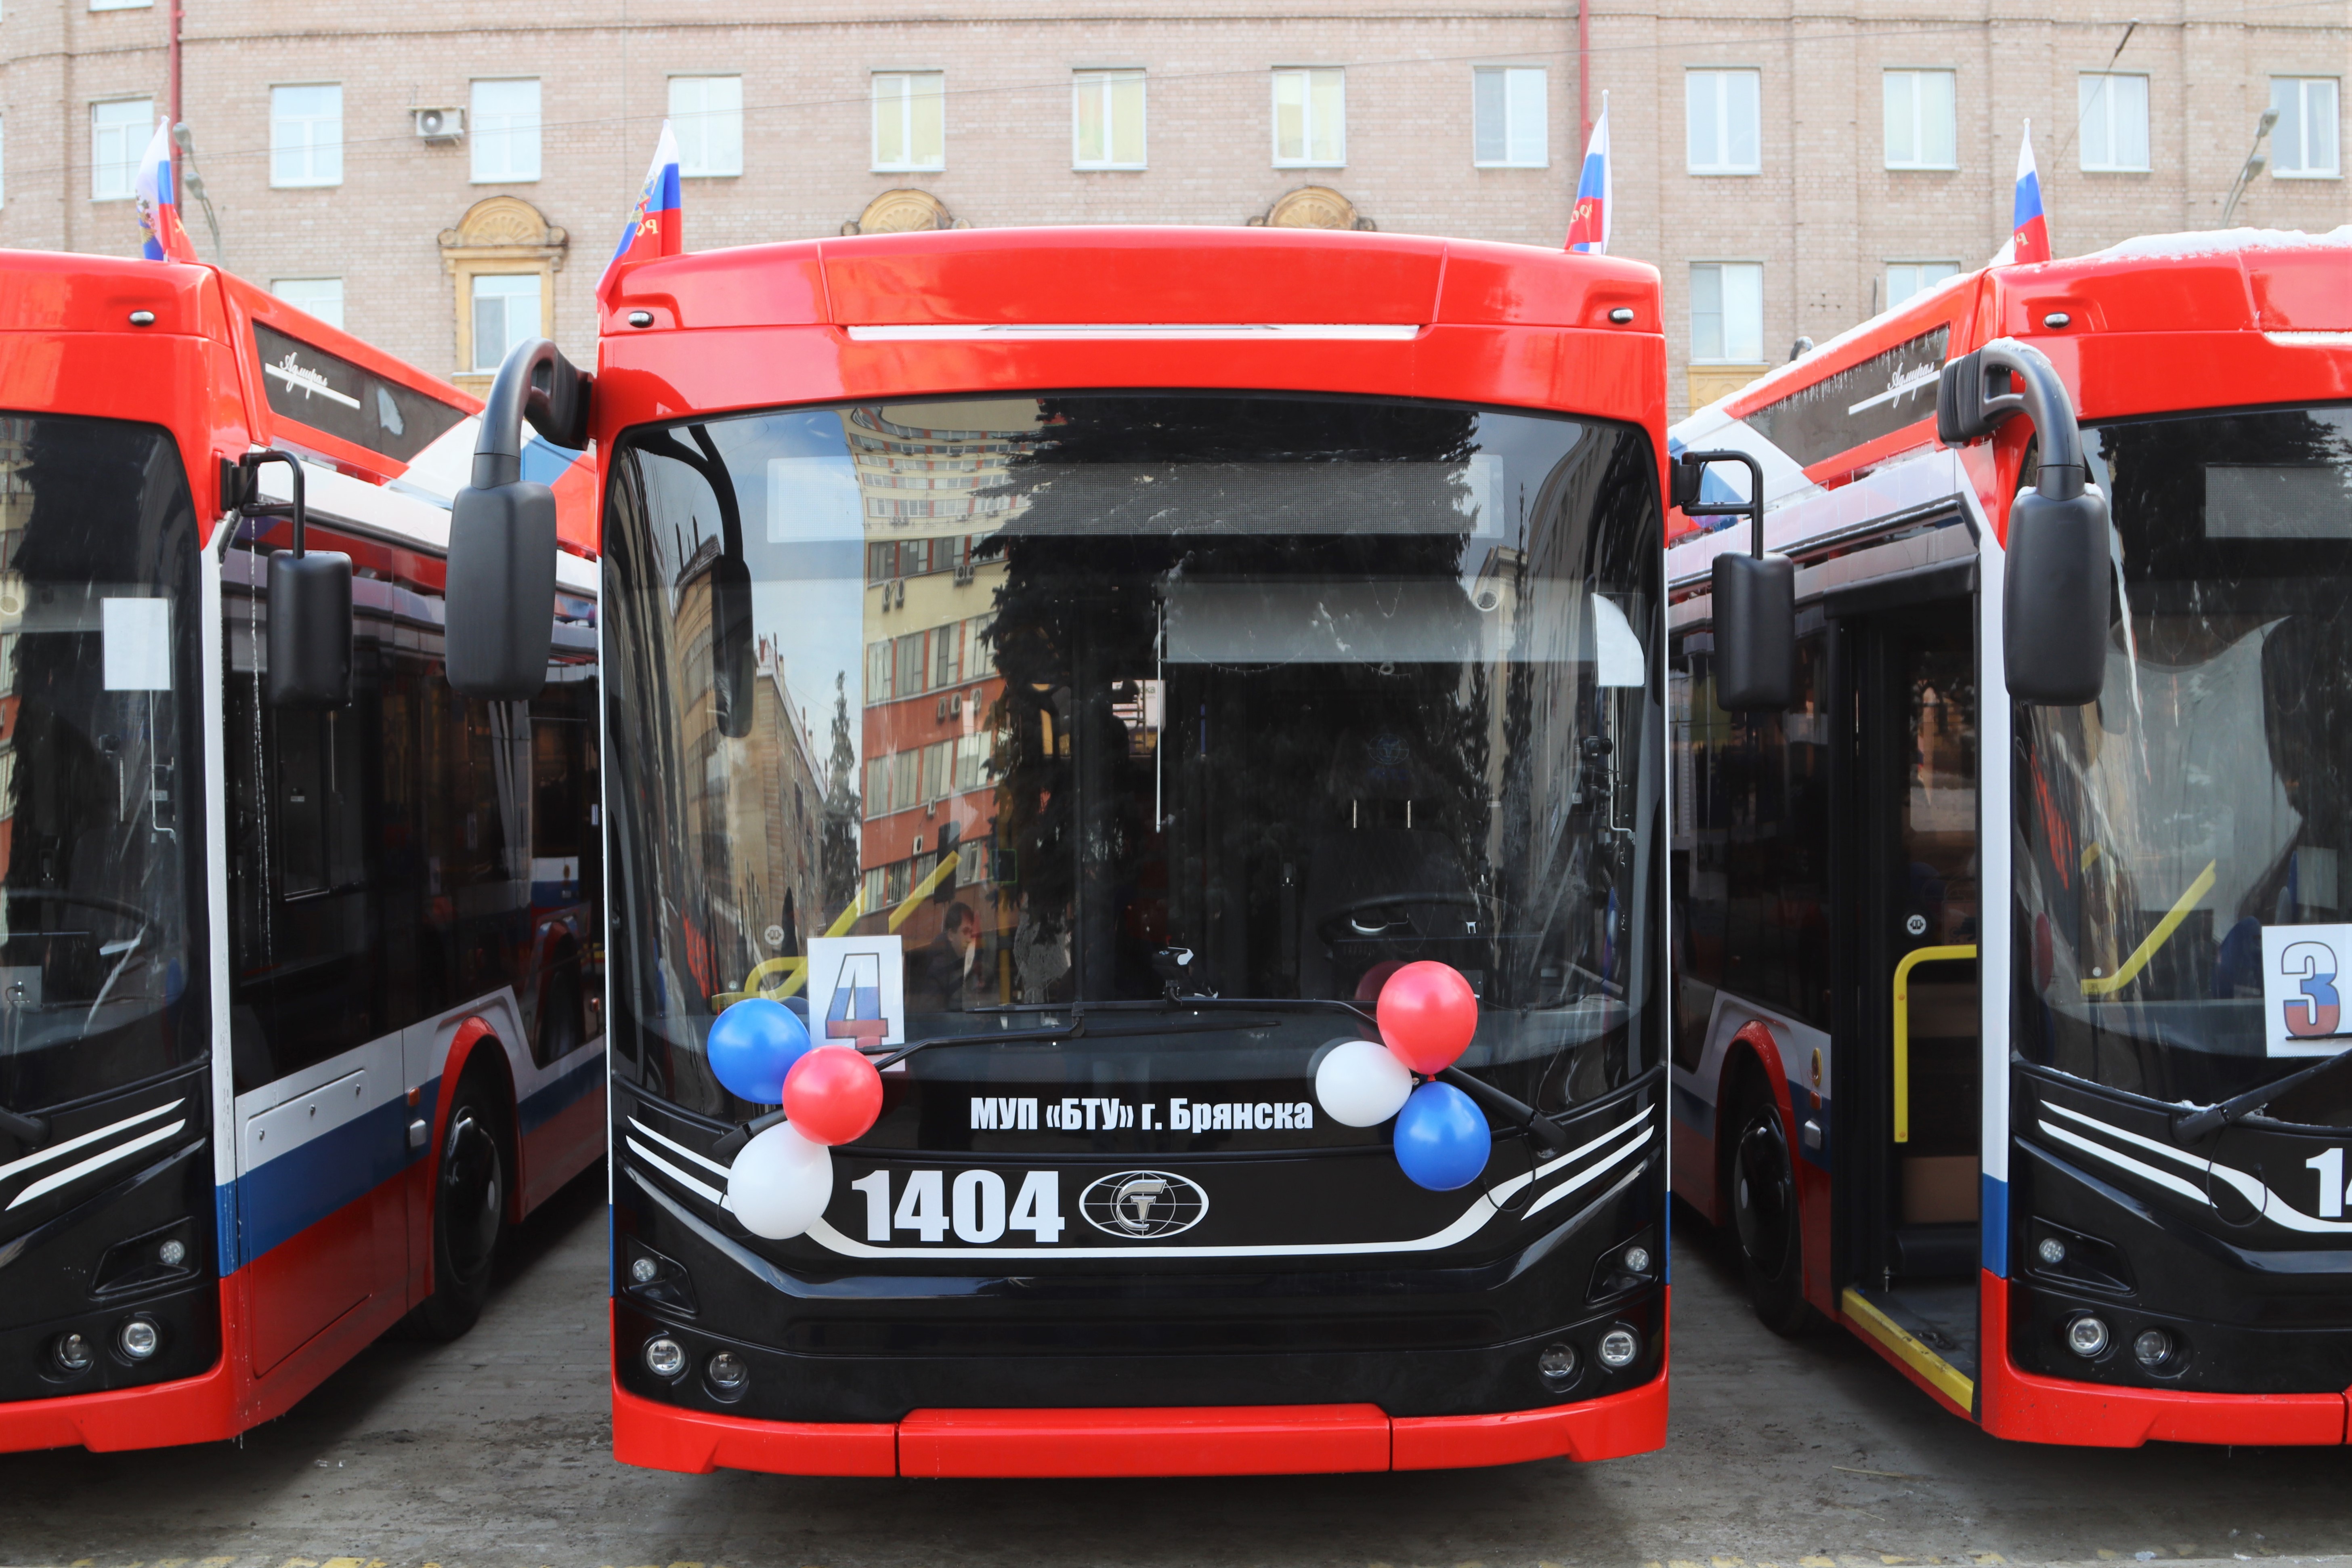 Движение 14 троллейбуса. Троллейбус Адмирал Брянск. Новый троллейбус. Красный троллейбус. Новые троллейбусы в Брянске в 2022 году.